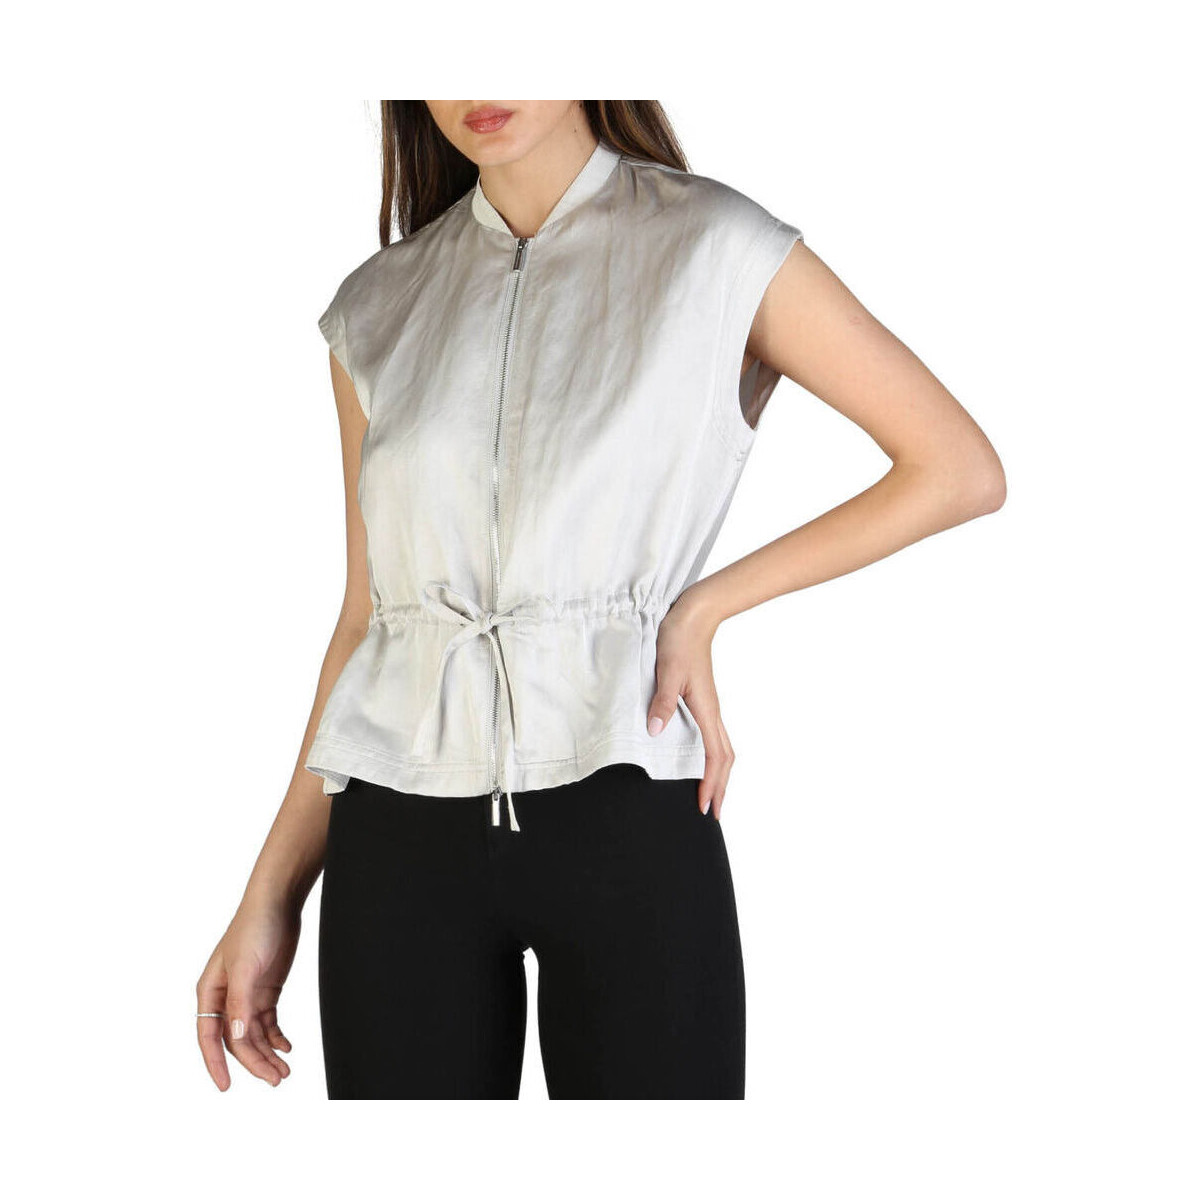 Textil Mulher camisas EAX - 3zyq02_ynbfz Cinza